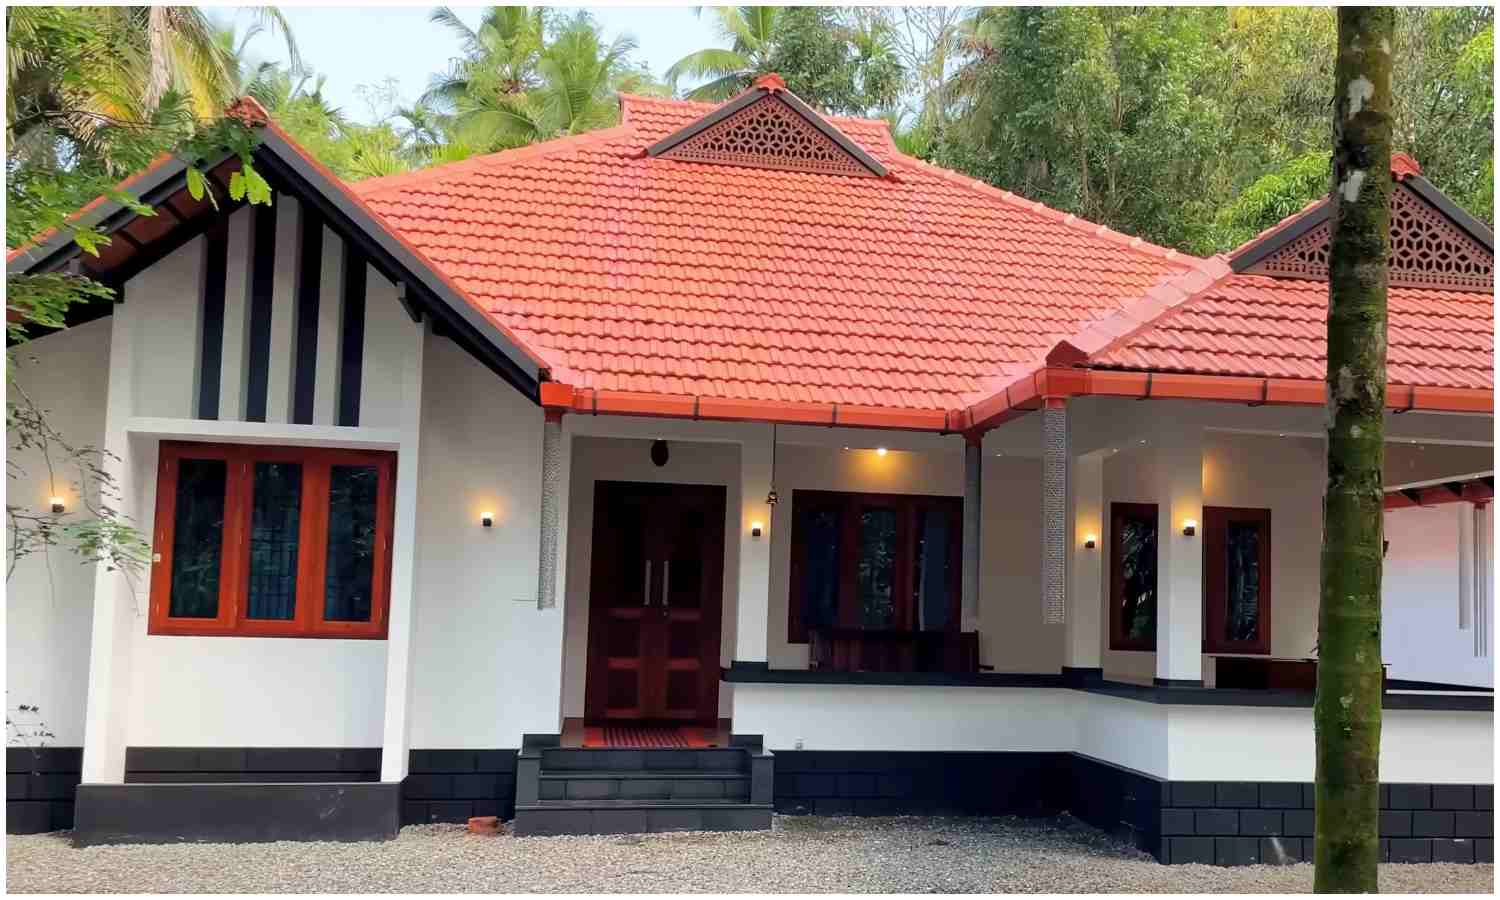  നാടൻ ശൈലിൽ ഒരു വീട്, ഏഴ് മാസം മഴപെയ്താലും വെള്ളം കെട്ടി നിൽക്കില്ല, ഇതാ ഒരു കേരള തനി നാടൻ സ്റ്റൈൽ ഹോം | Kerala Budjet Friendly Traditional home design 